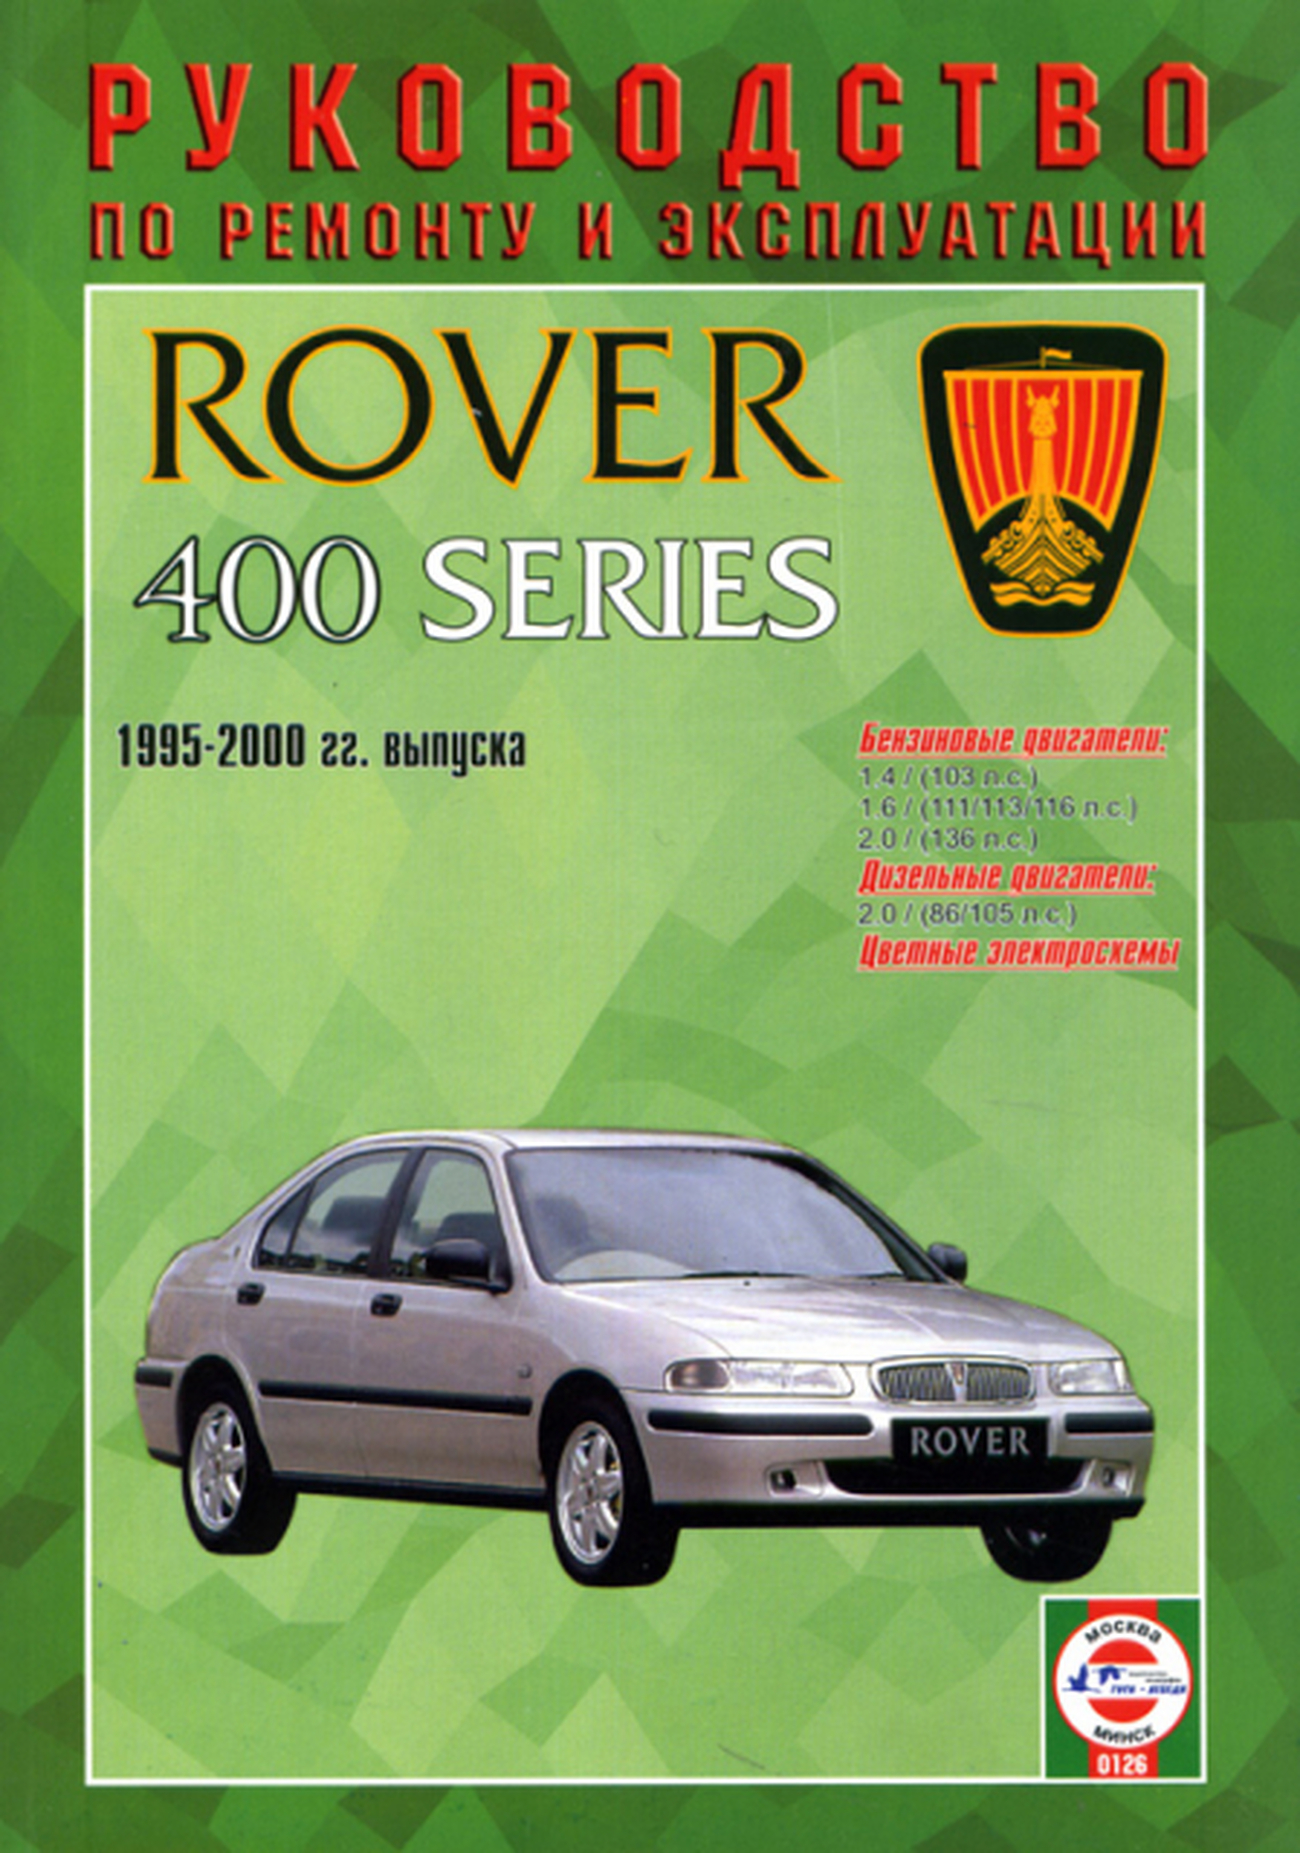 Книга: ROVER 400 серии (б , д) 1995-2000 г.в., рем., экспл., то | Чижовка